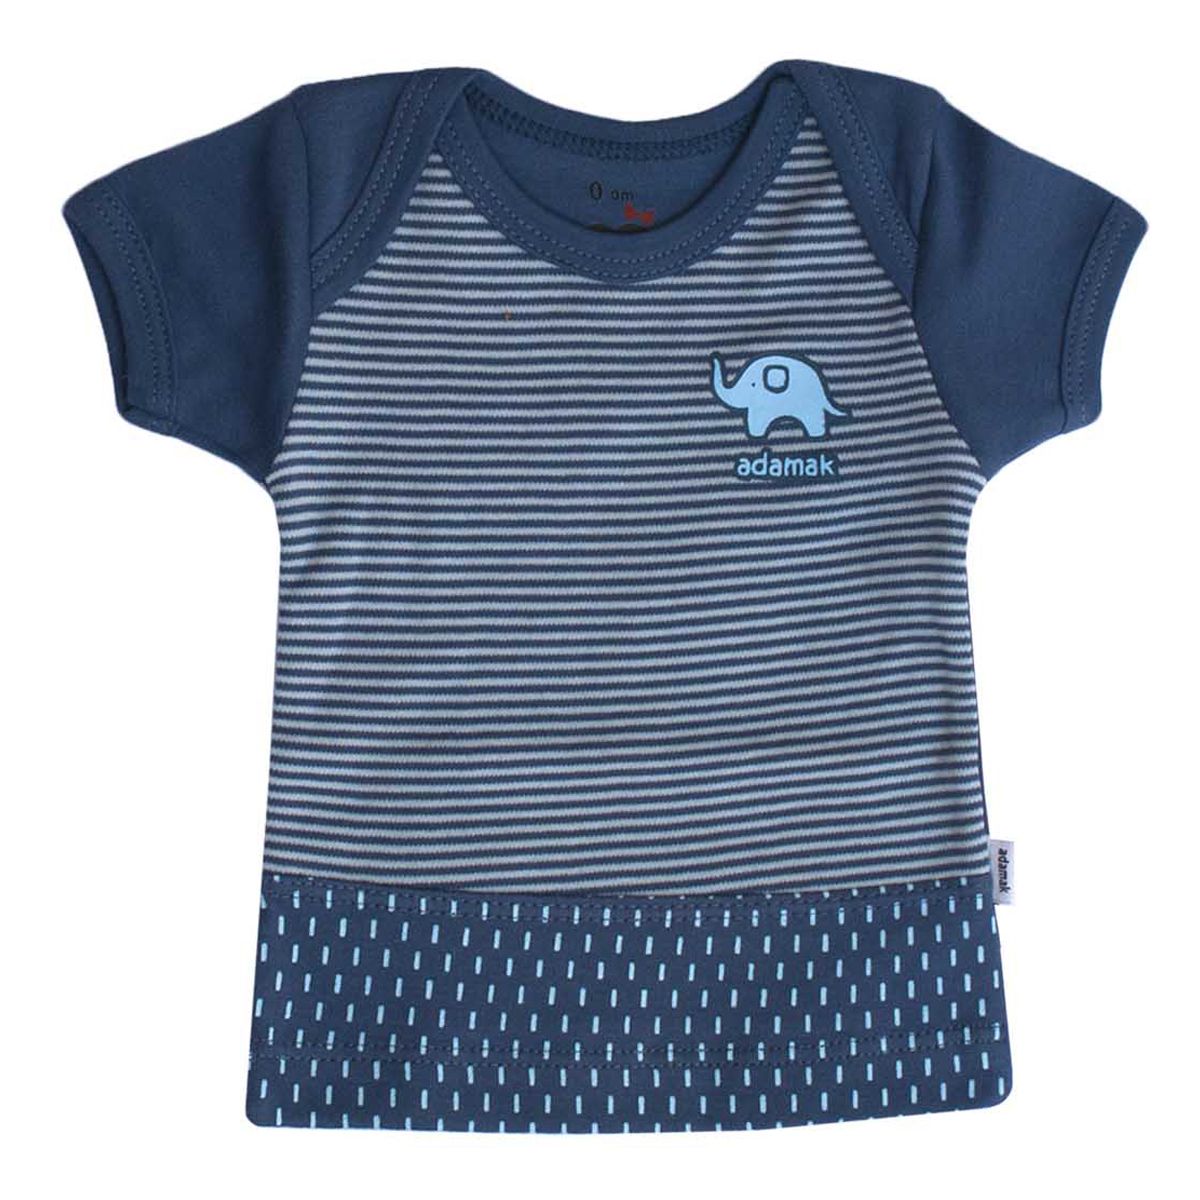  تی شرت آستین کوتاه نوزادی آدمک طرح فیل کد 01 -  - 2